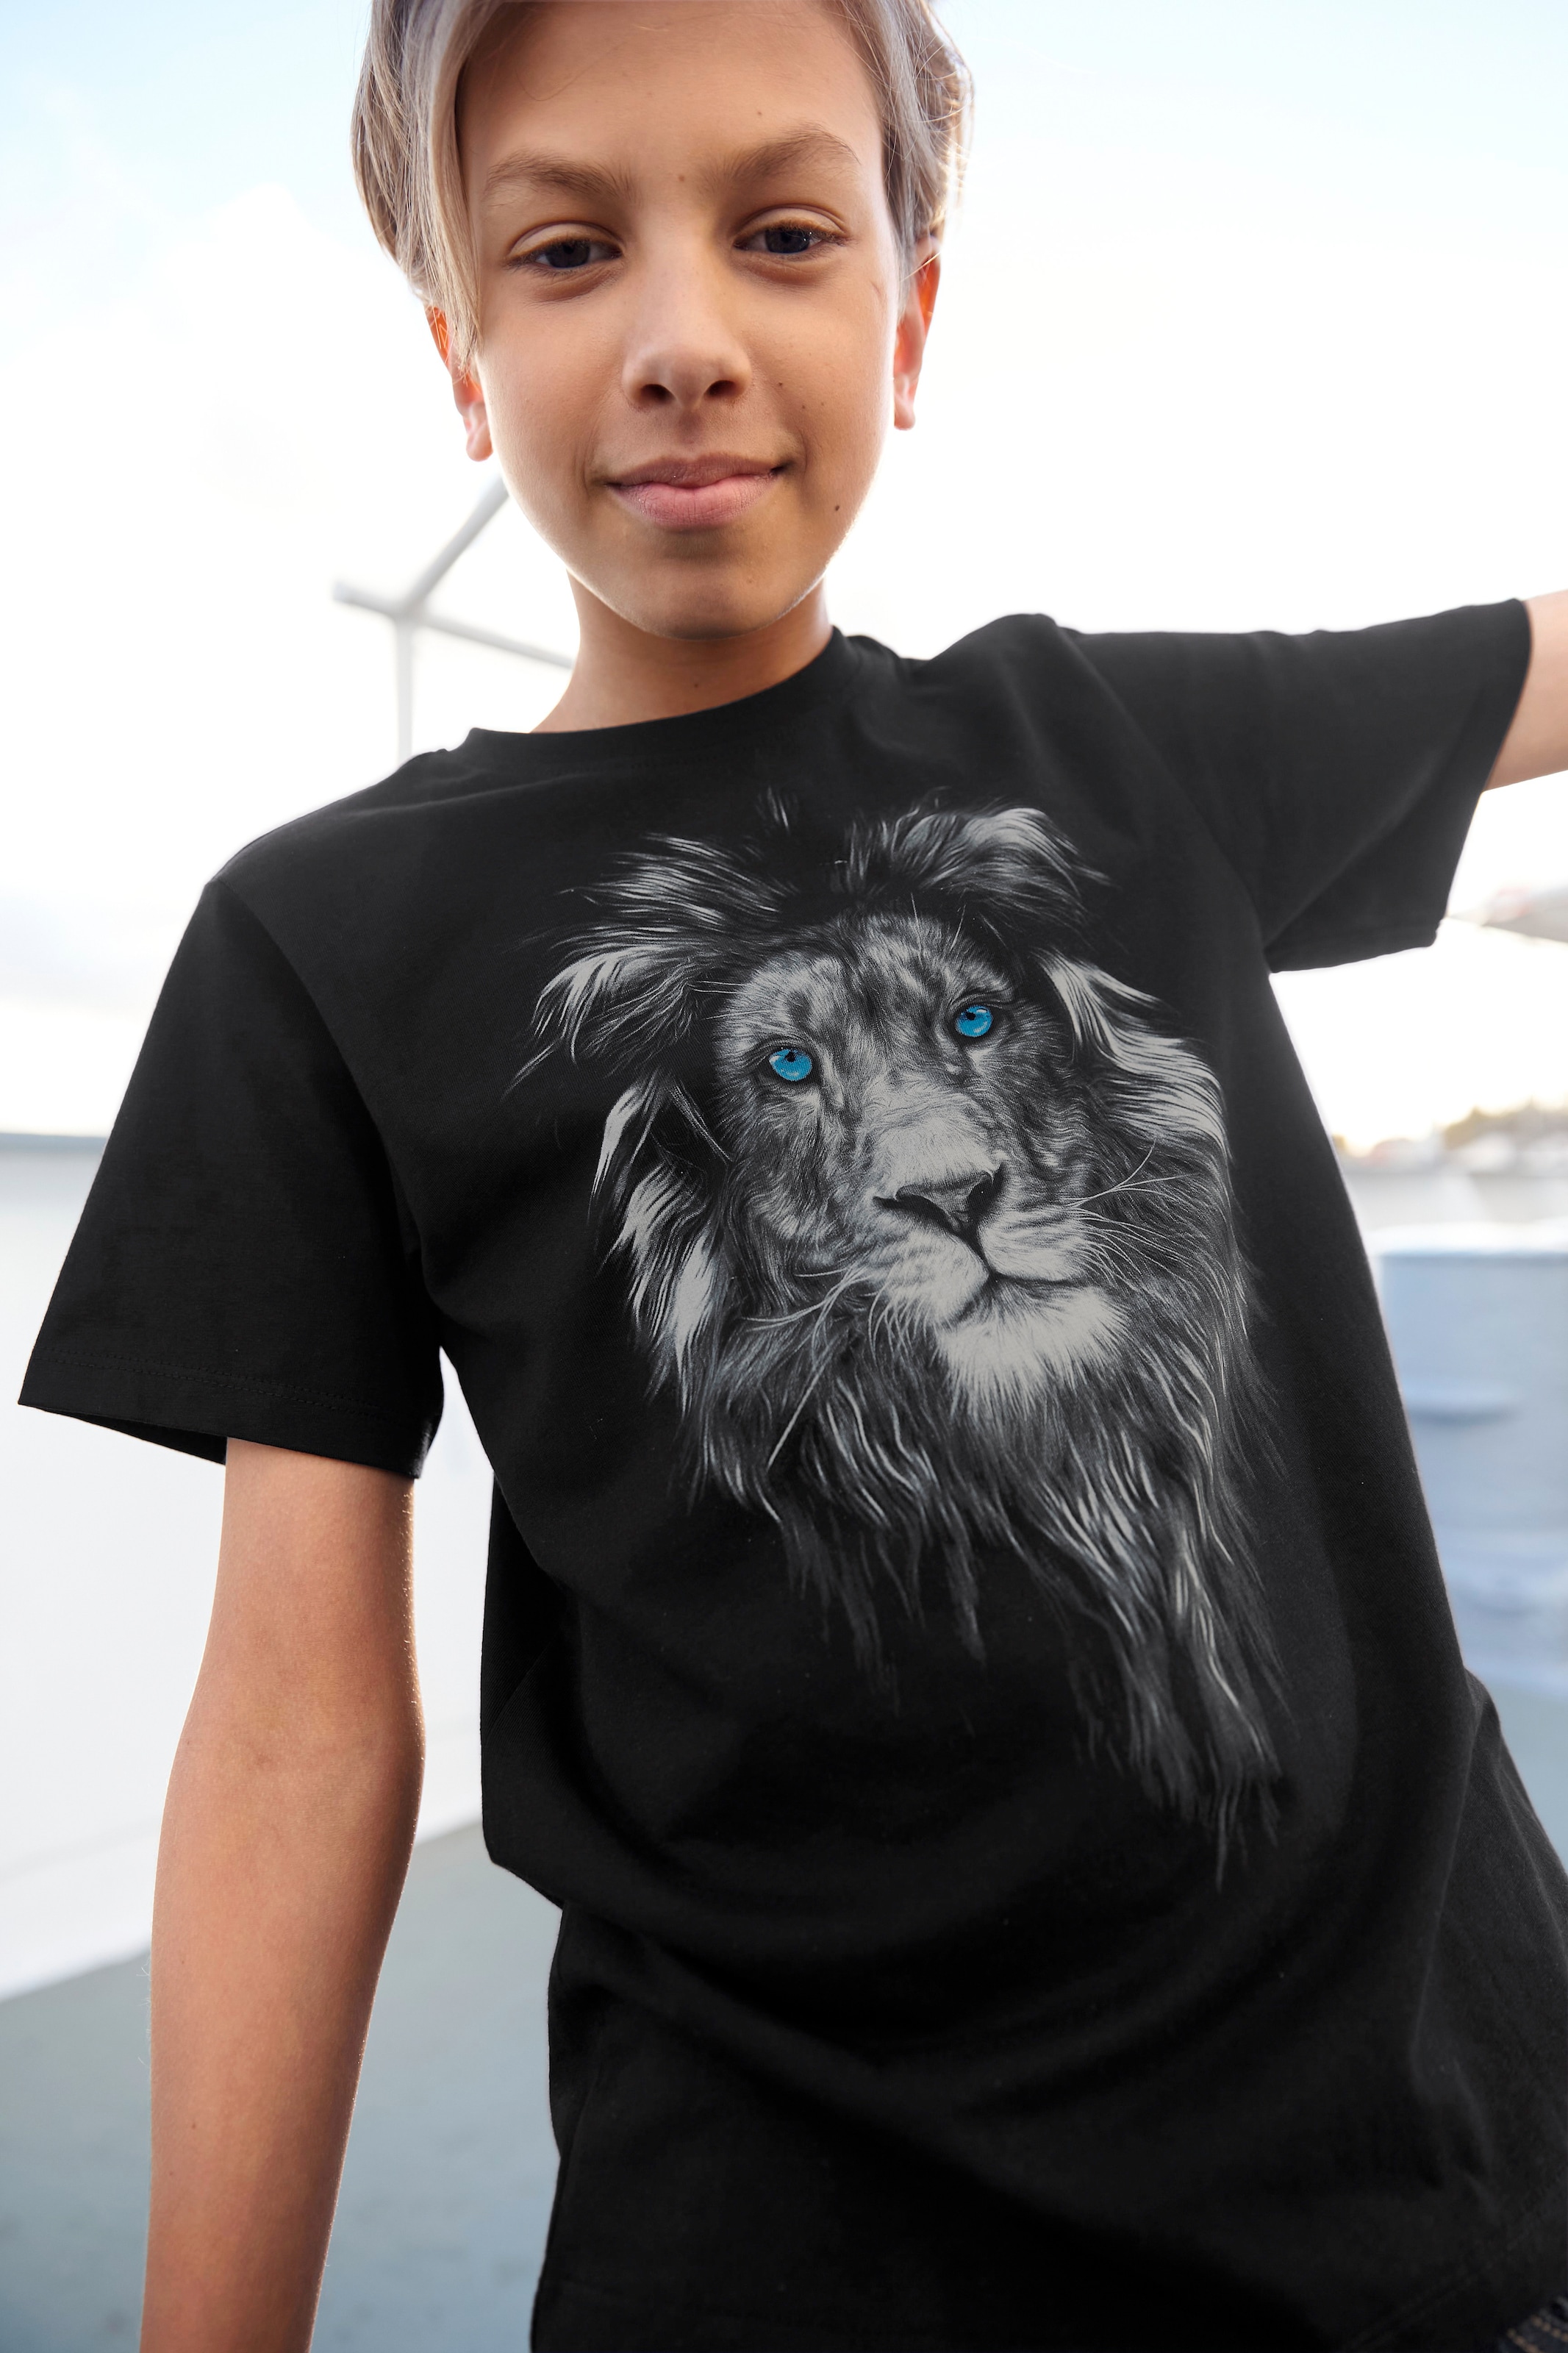 KIDSWORLD T-Shirt »LION WITH BLUE EYES« versandkostenfrei auf